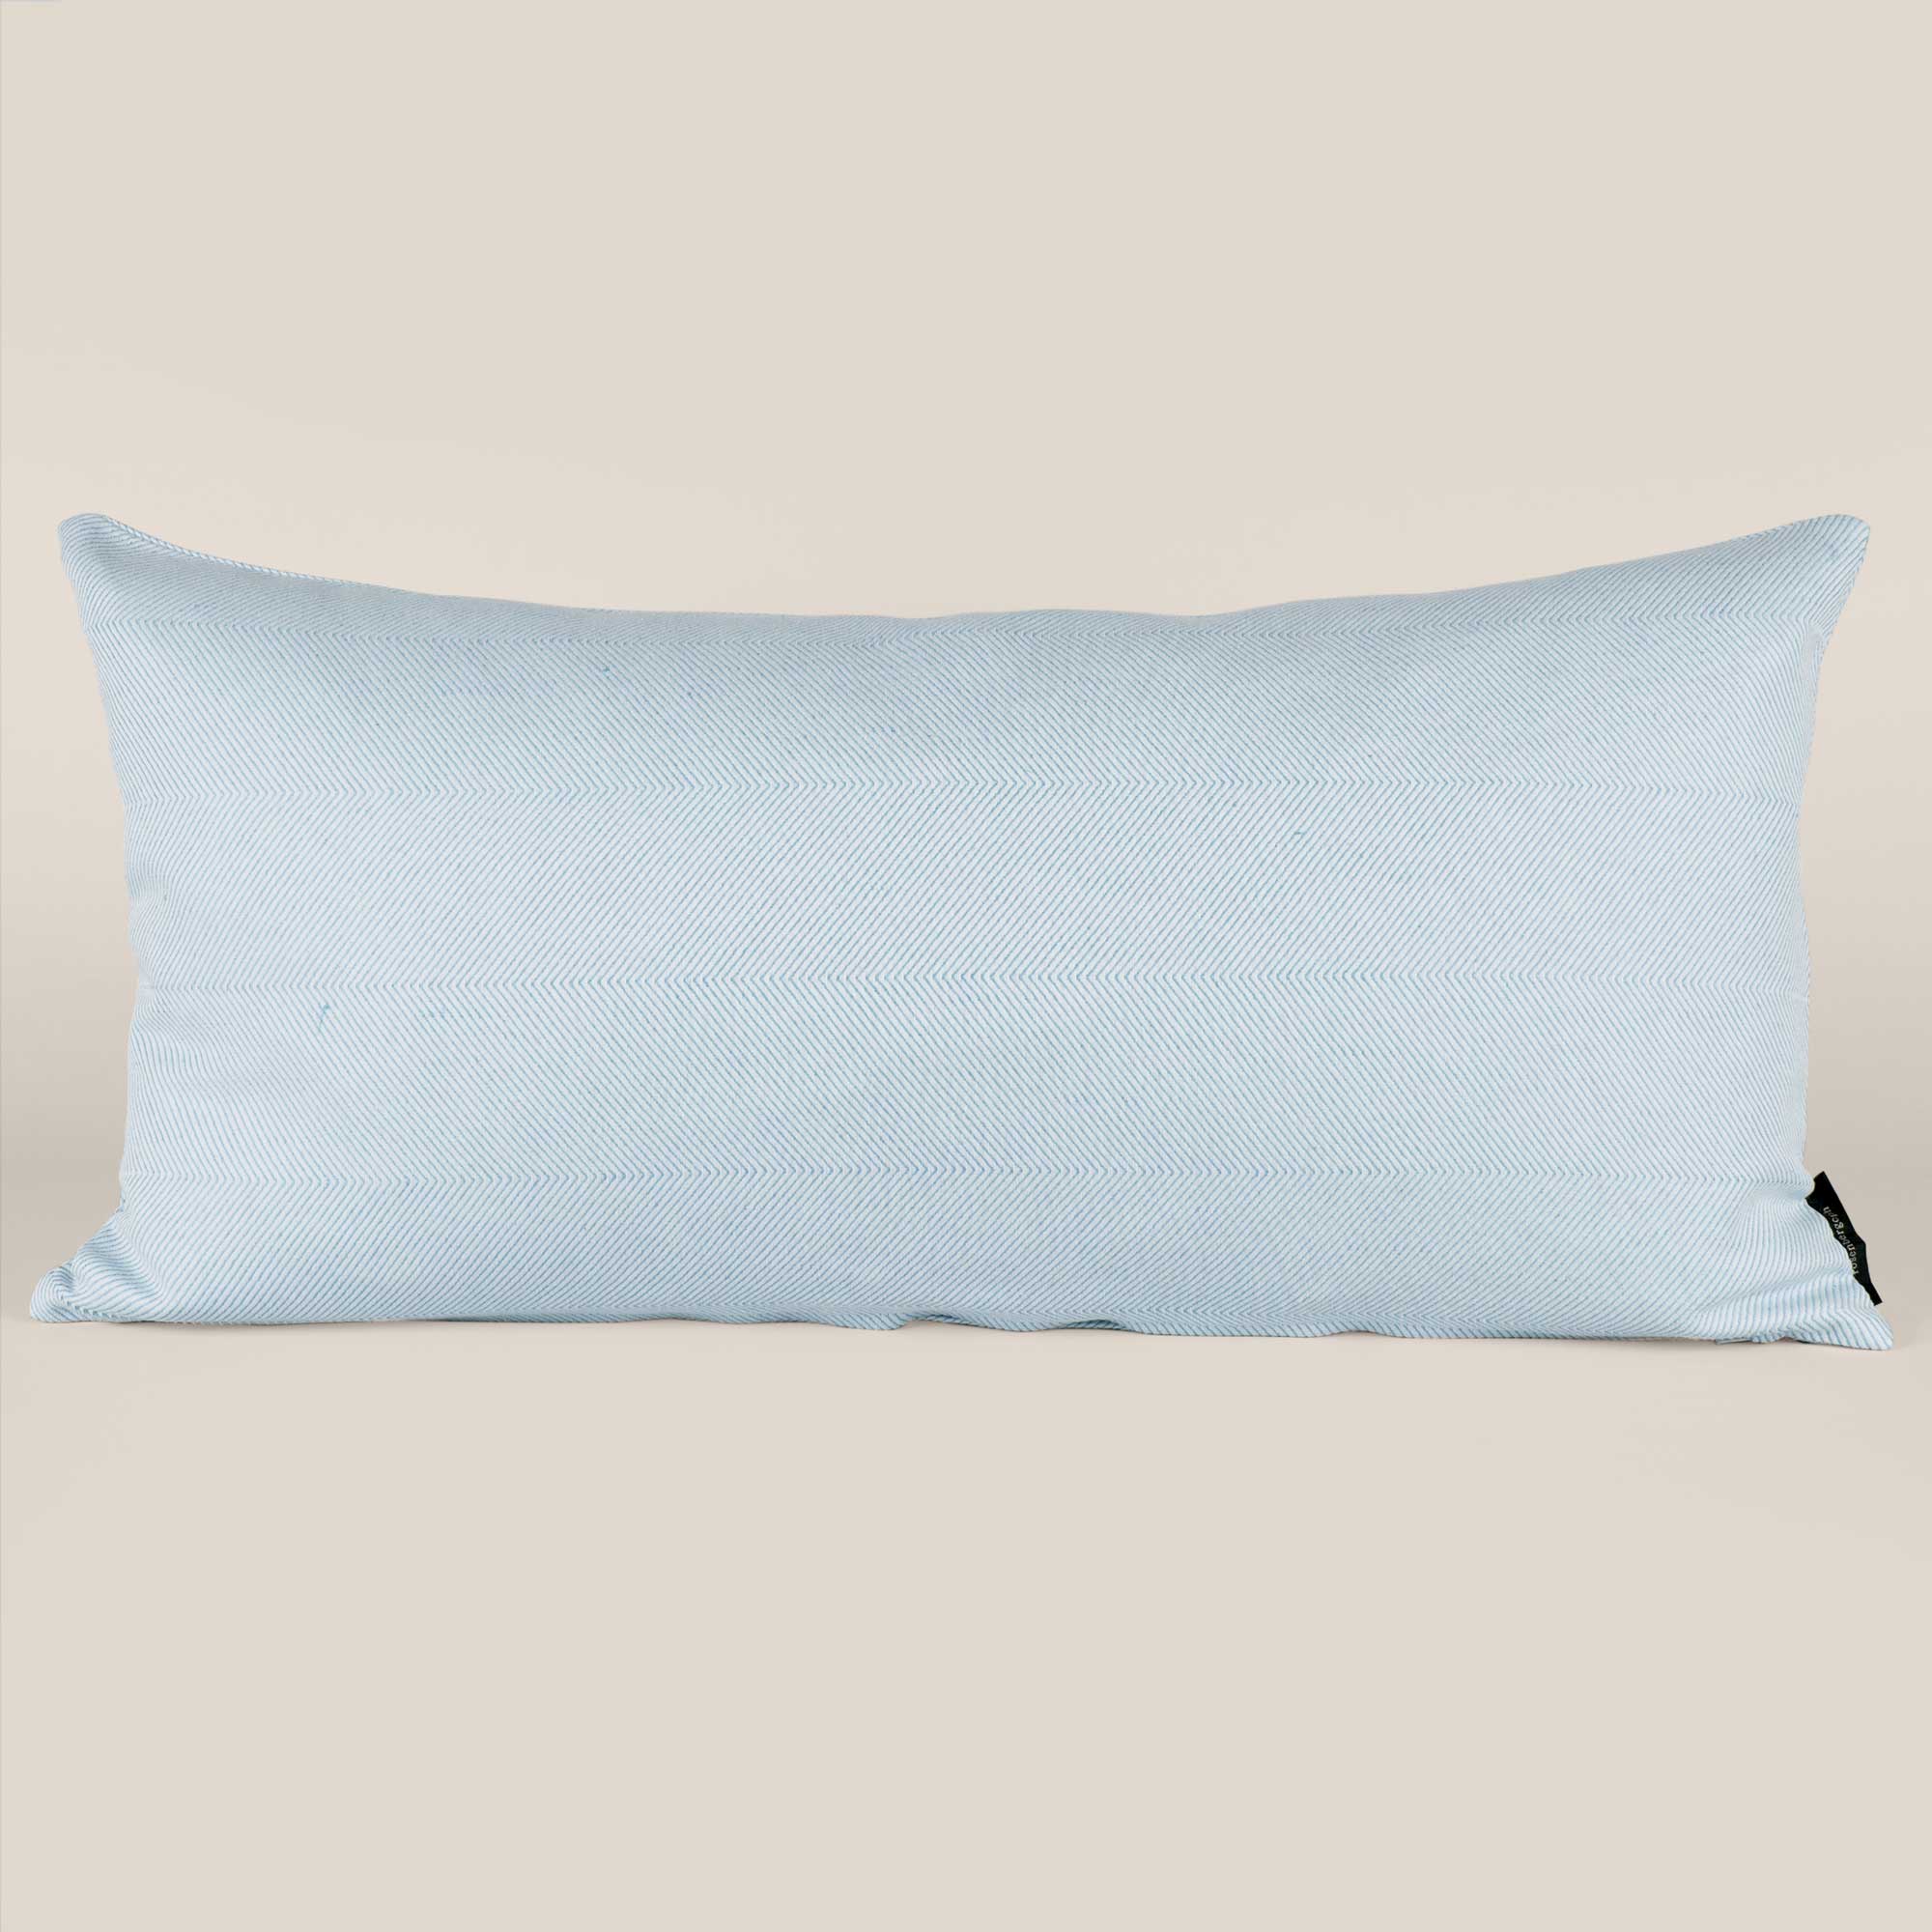 Rectangular cushion linen/cotton Light Sky Blue, design by Anne Rosenberg, RosenbergCph